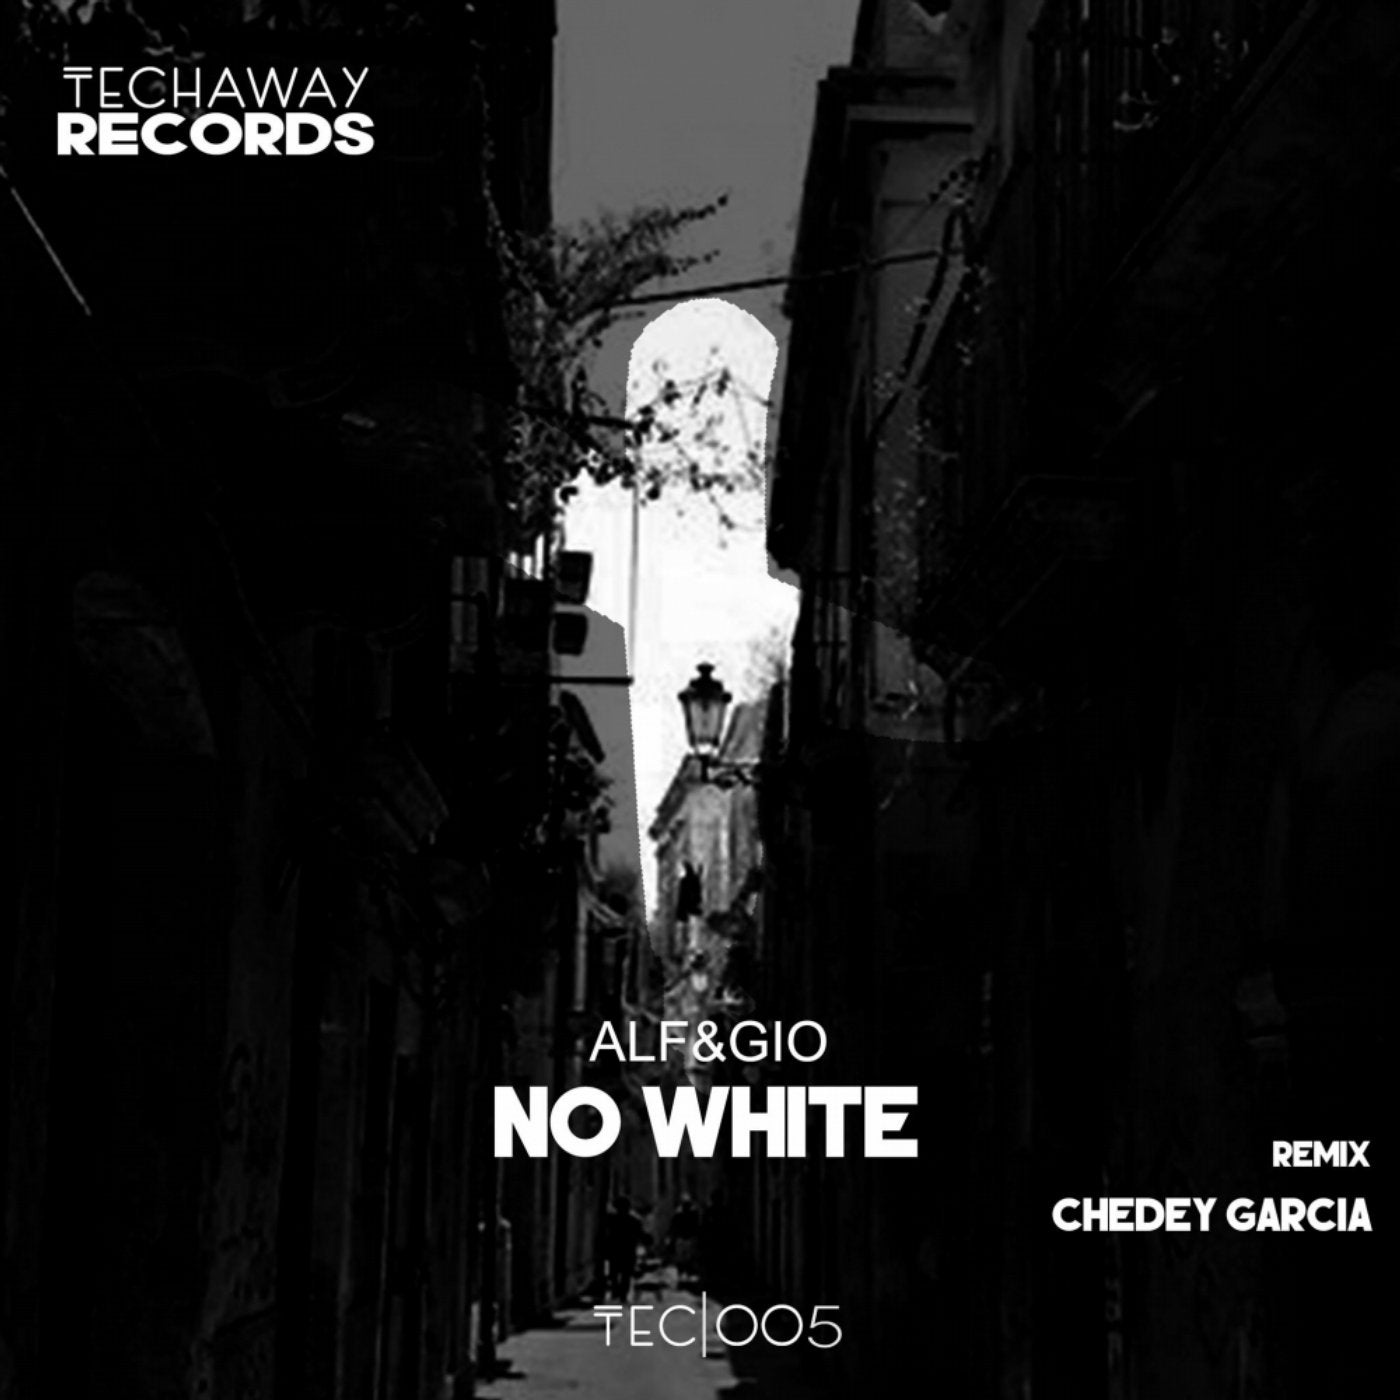 No White EP